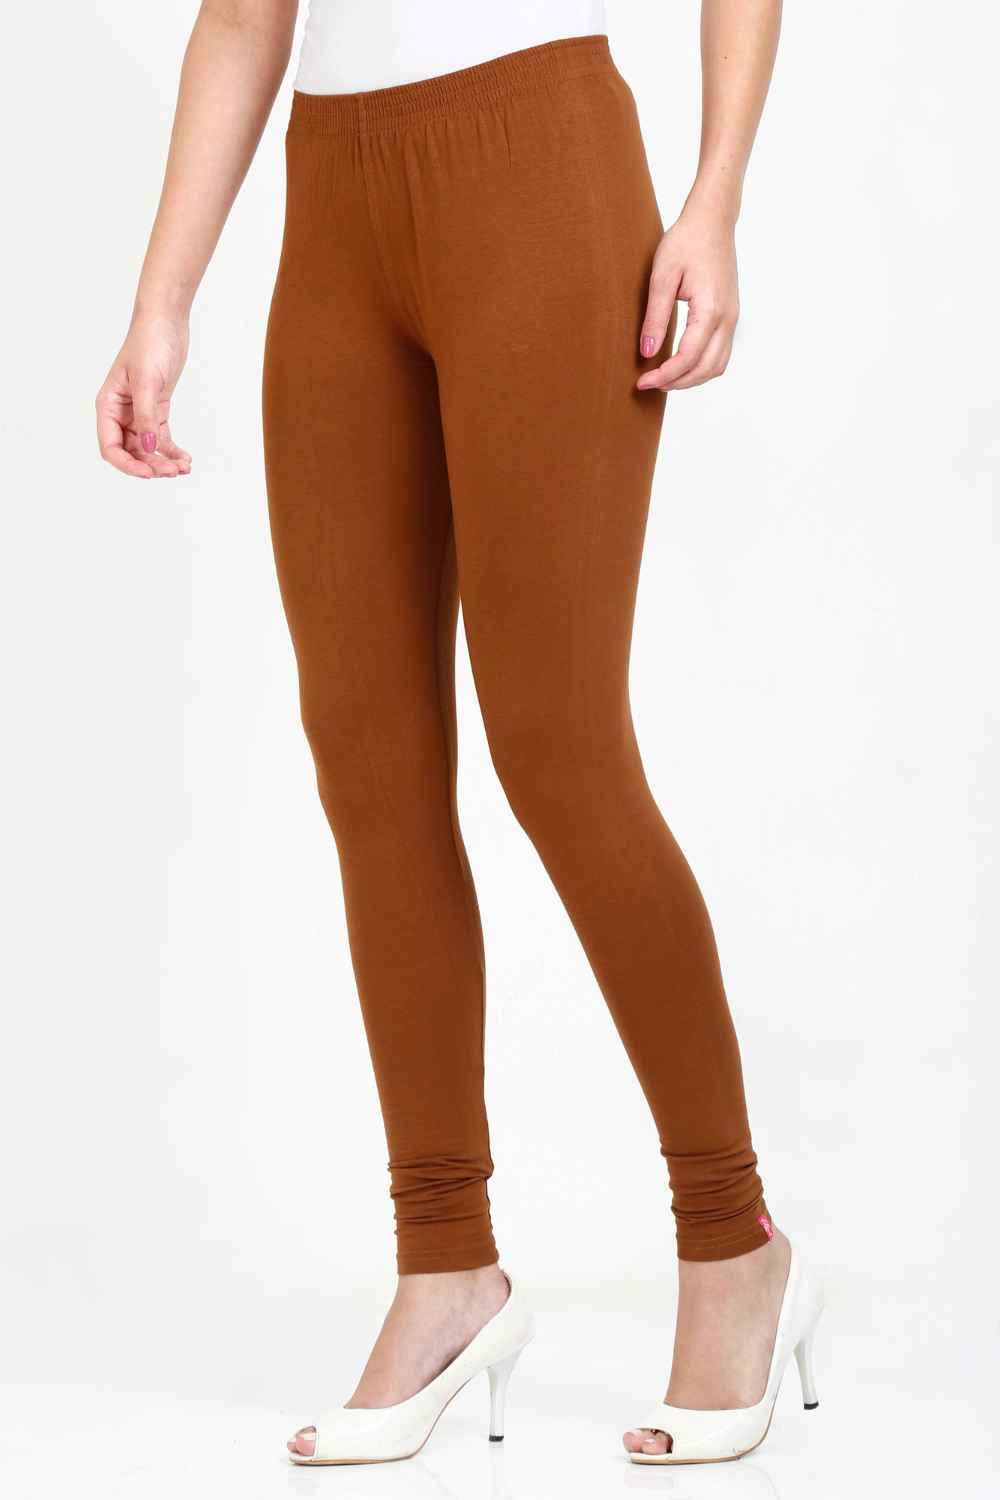 Dark Brown Cotton Legging, Size: Medium, Large at Rs 170 in Thane